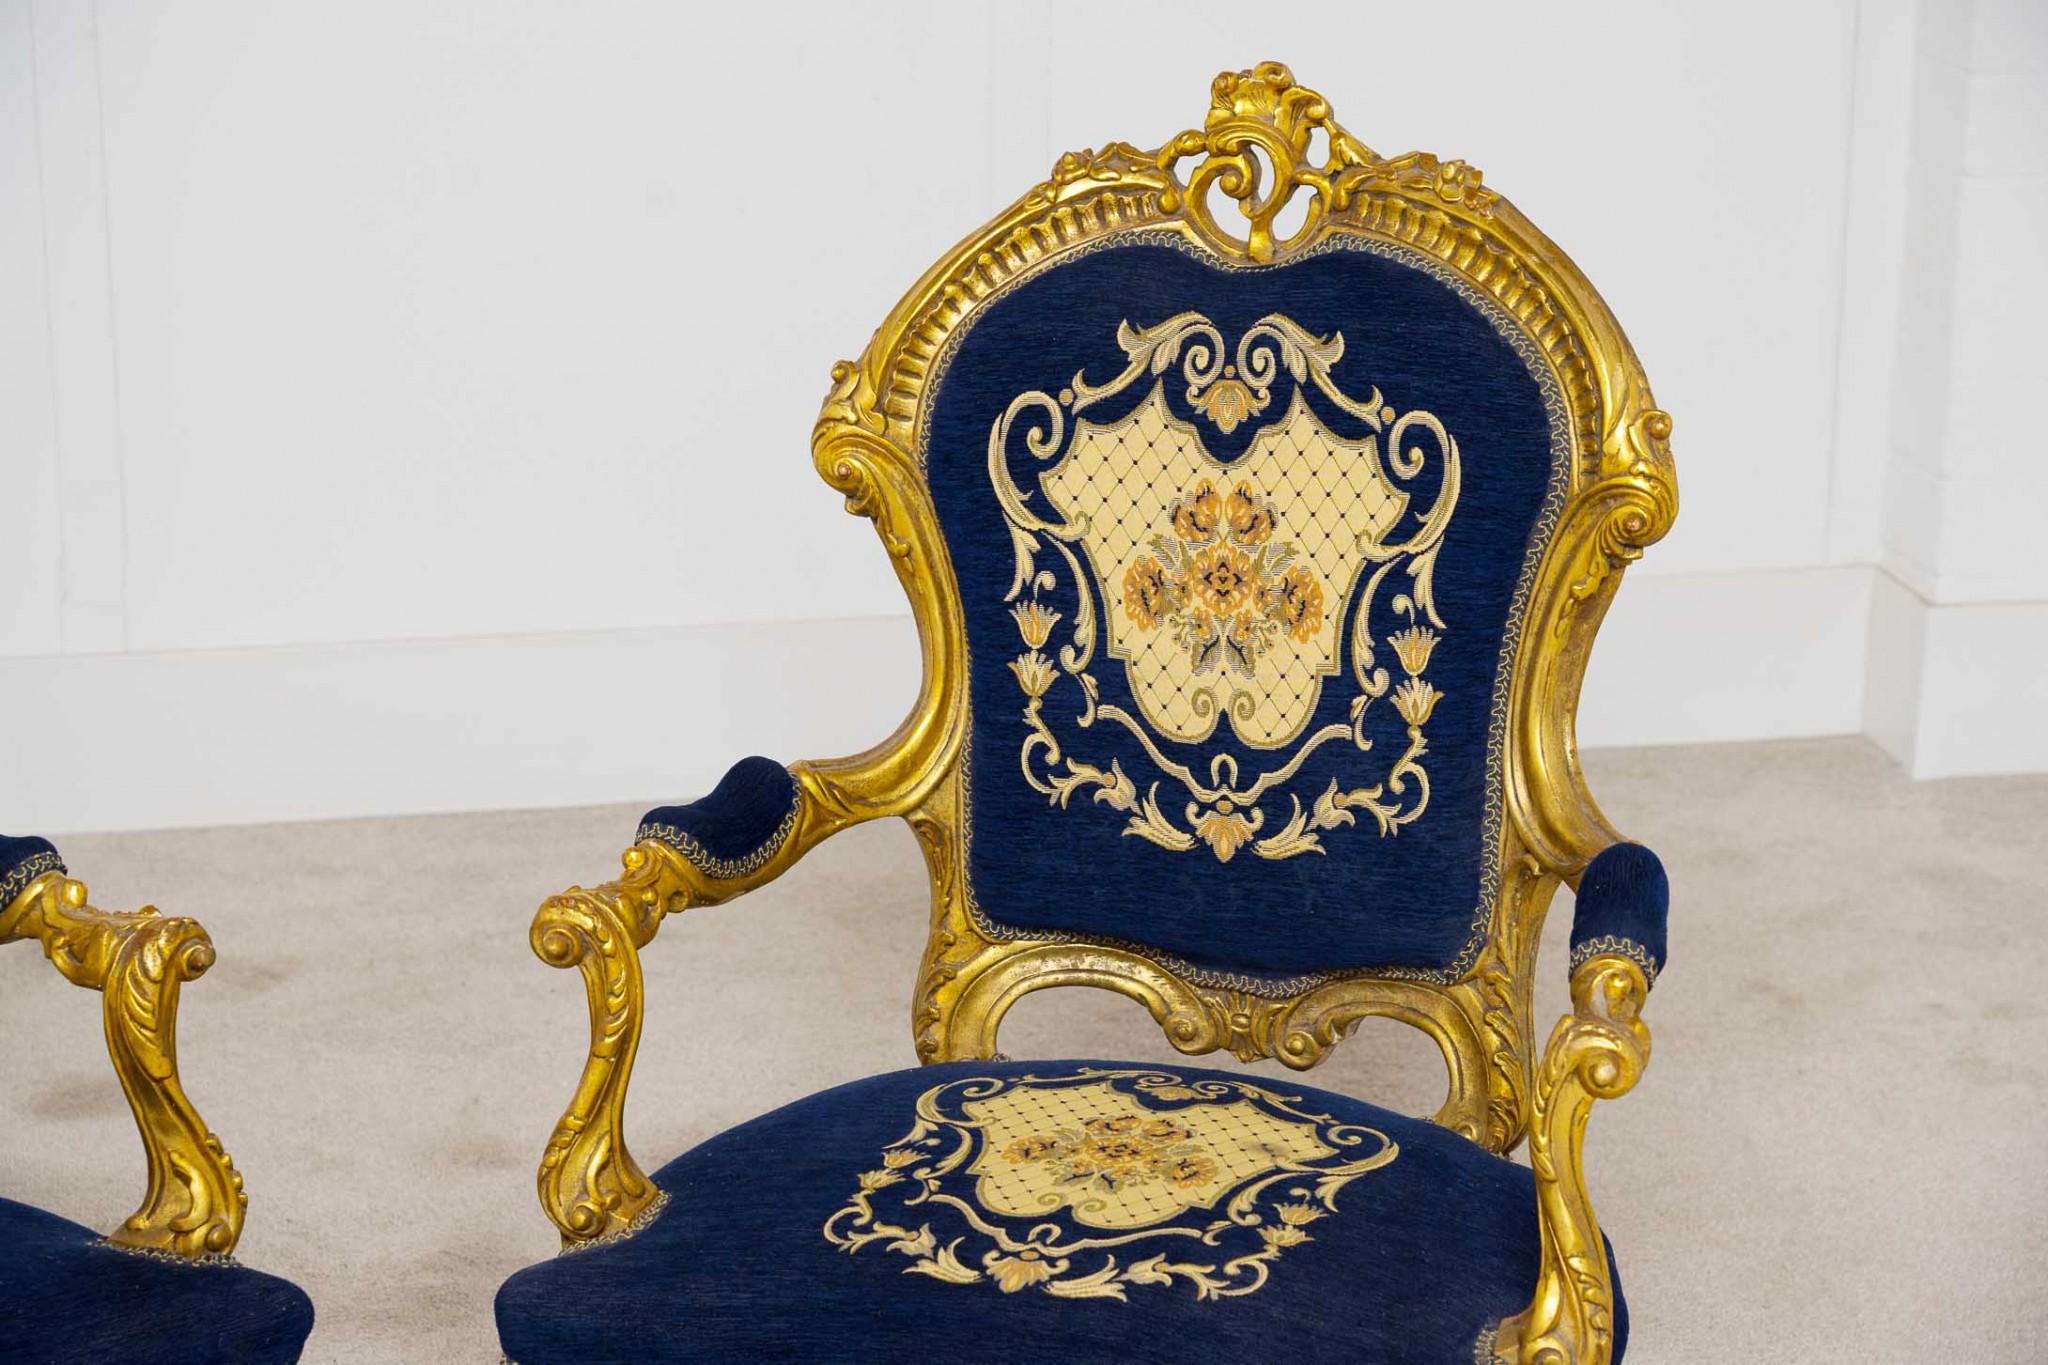 Elegante paire de fauteuils français vintage
Cadres sculptés à la main et dorés pour leur donner un aspect doré.
Dossiers, sièges et accoudoirs rembourrés, donc très confortables
Rembourré avec un imprimé floral, il est propre et ne dégage pas